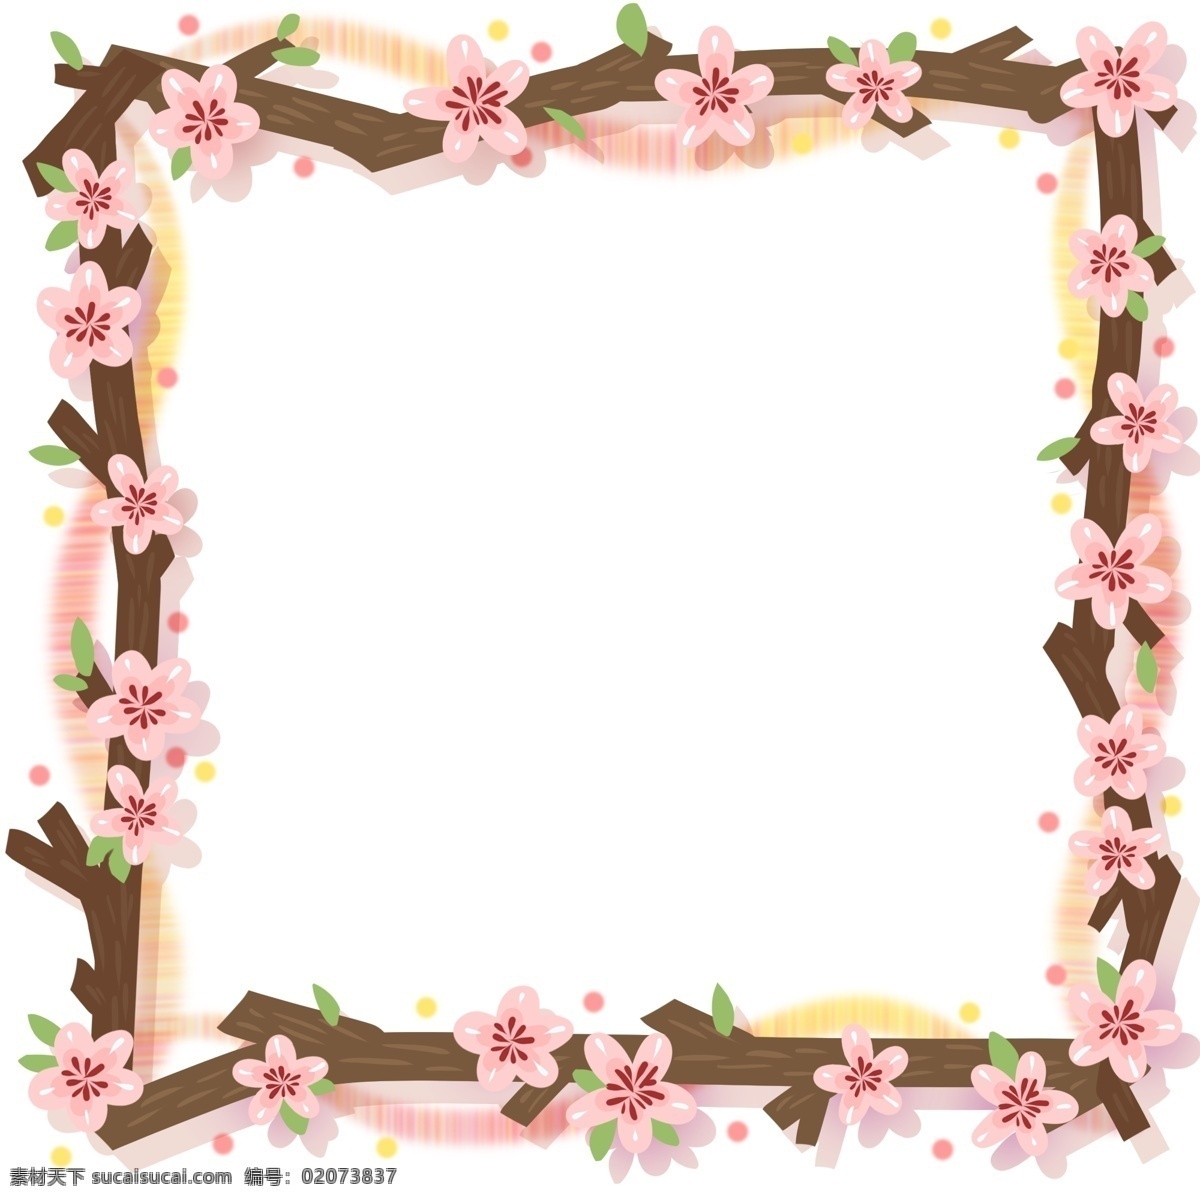 樱花 边框 桃花 树枝 花瓣 花朵 树叶 叶子 纹理 枝干 卡通 可爱 粉色 绿色